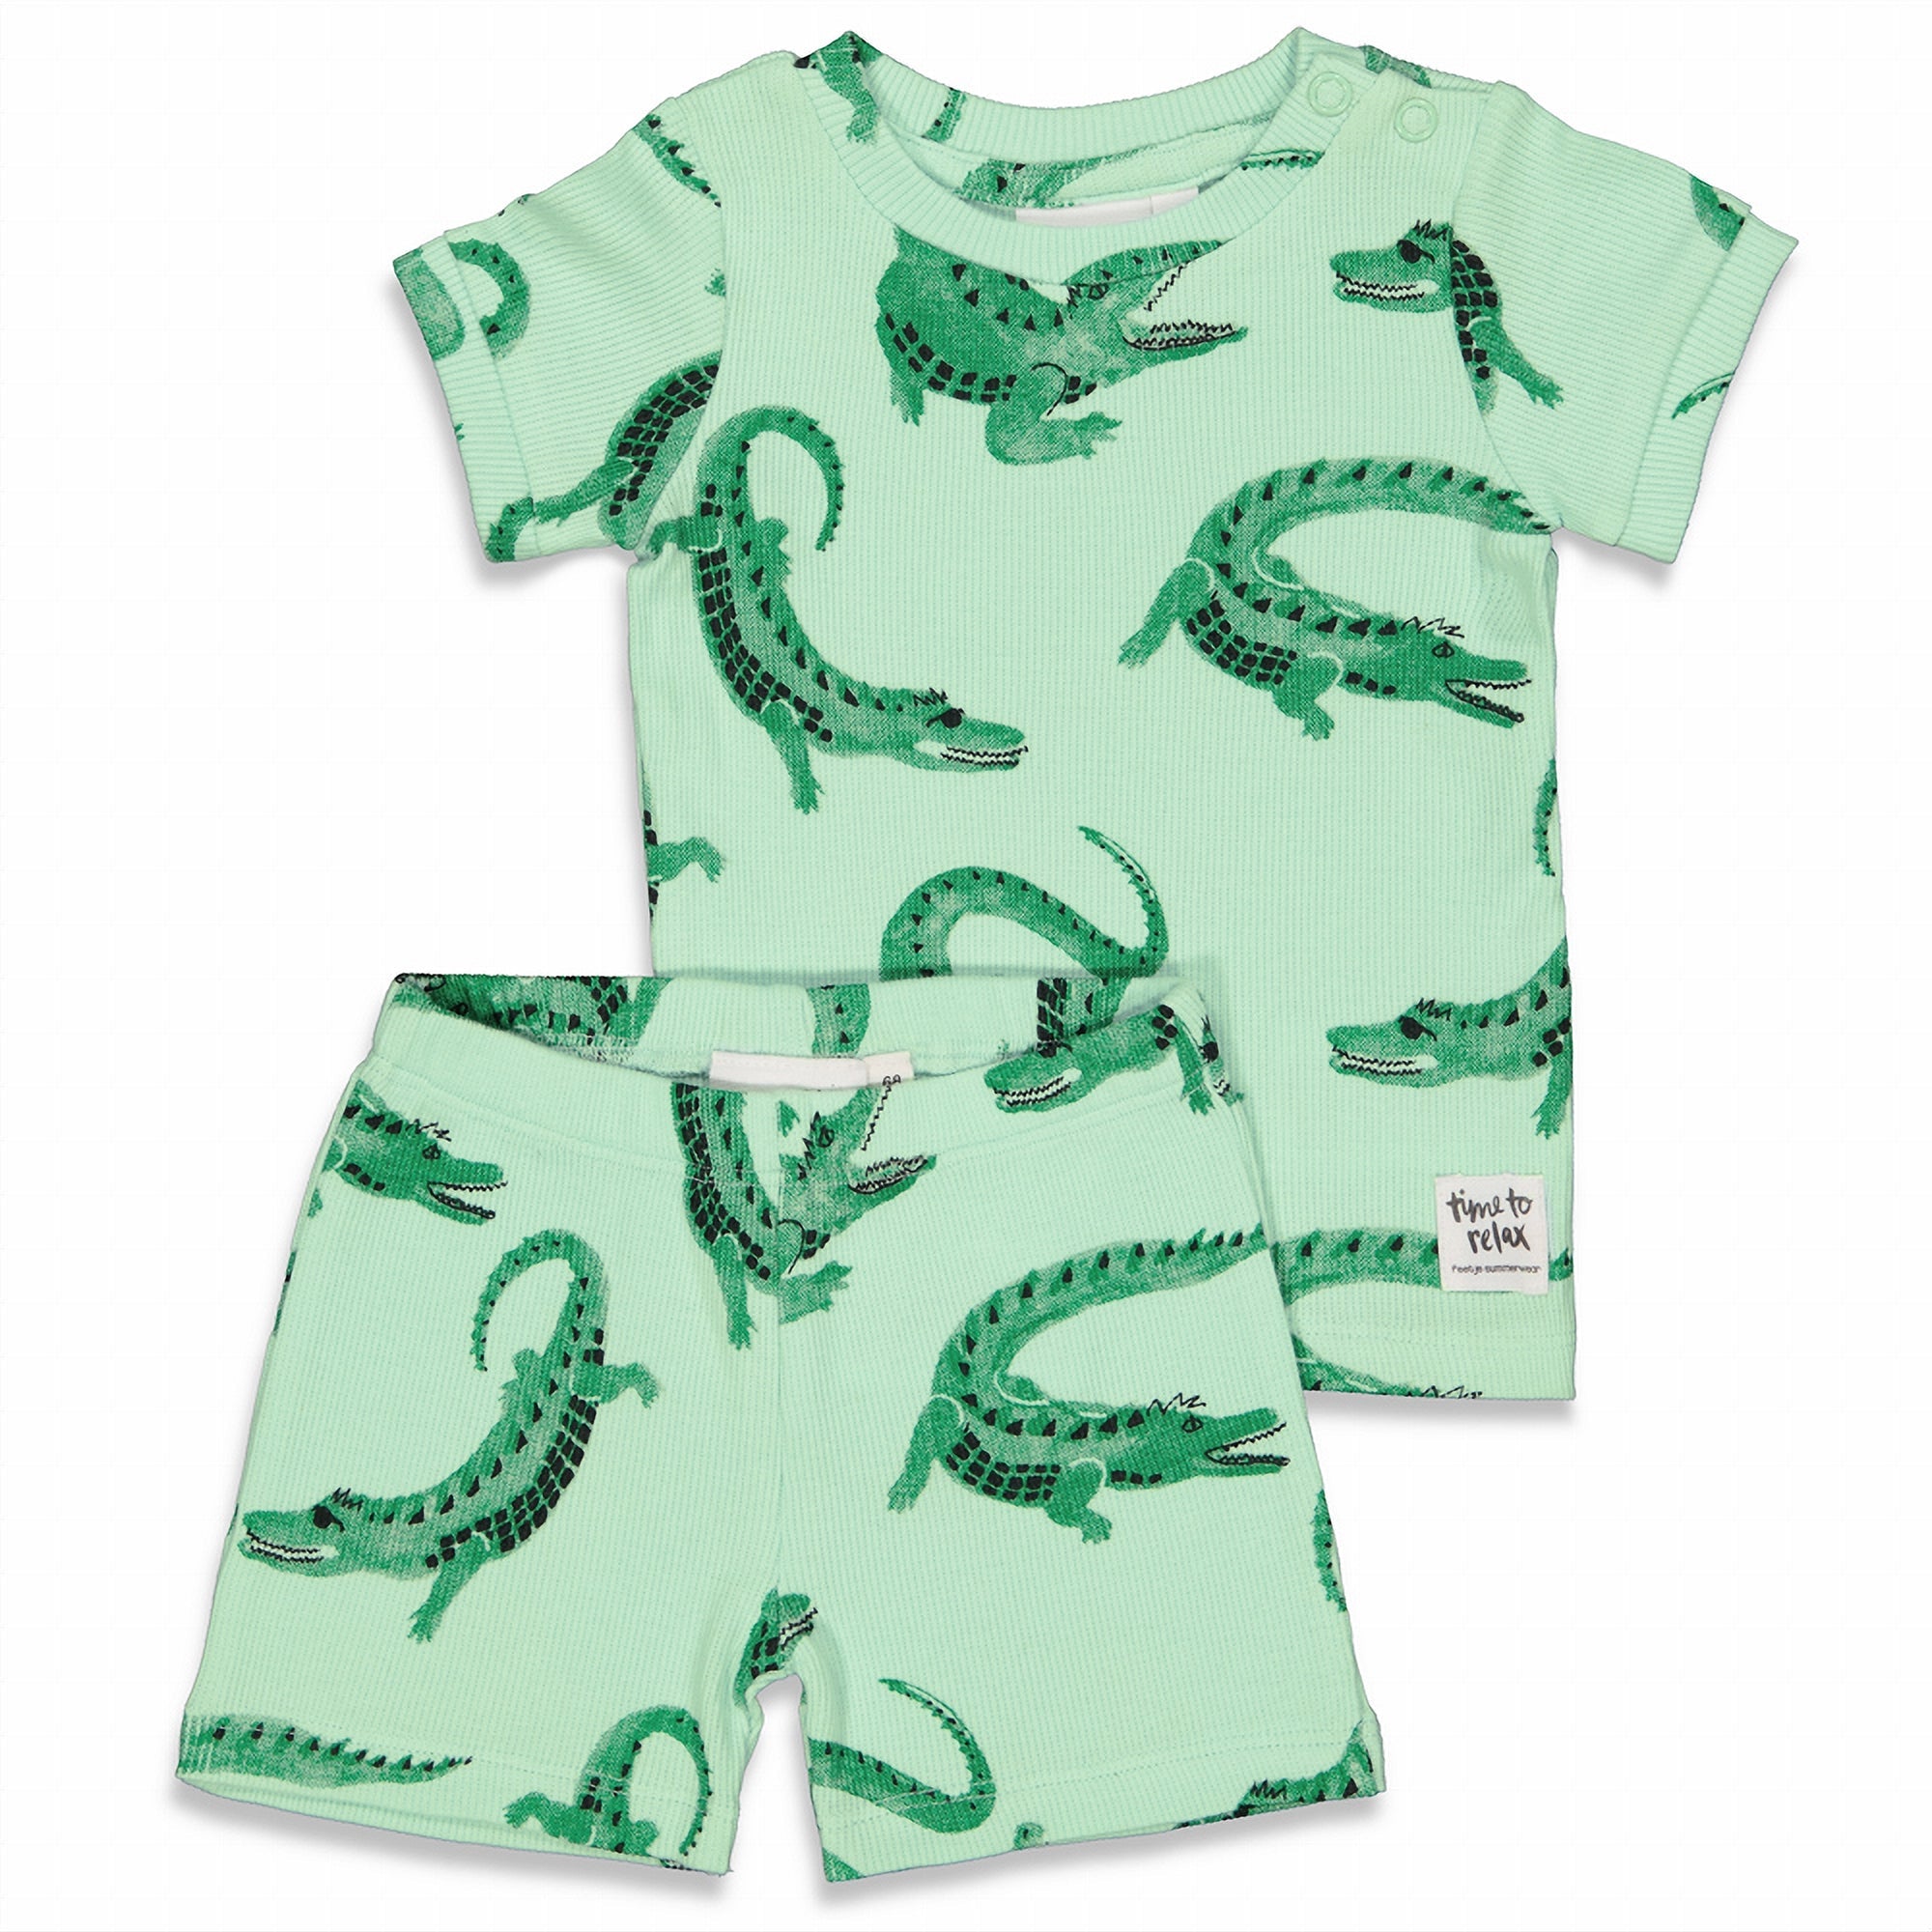 Jongens Chris Croc - Premium Summerwear by FEETJE van Feetje in de kleur Groen in maat 152.